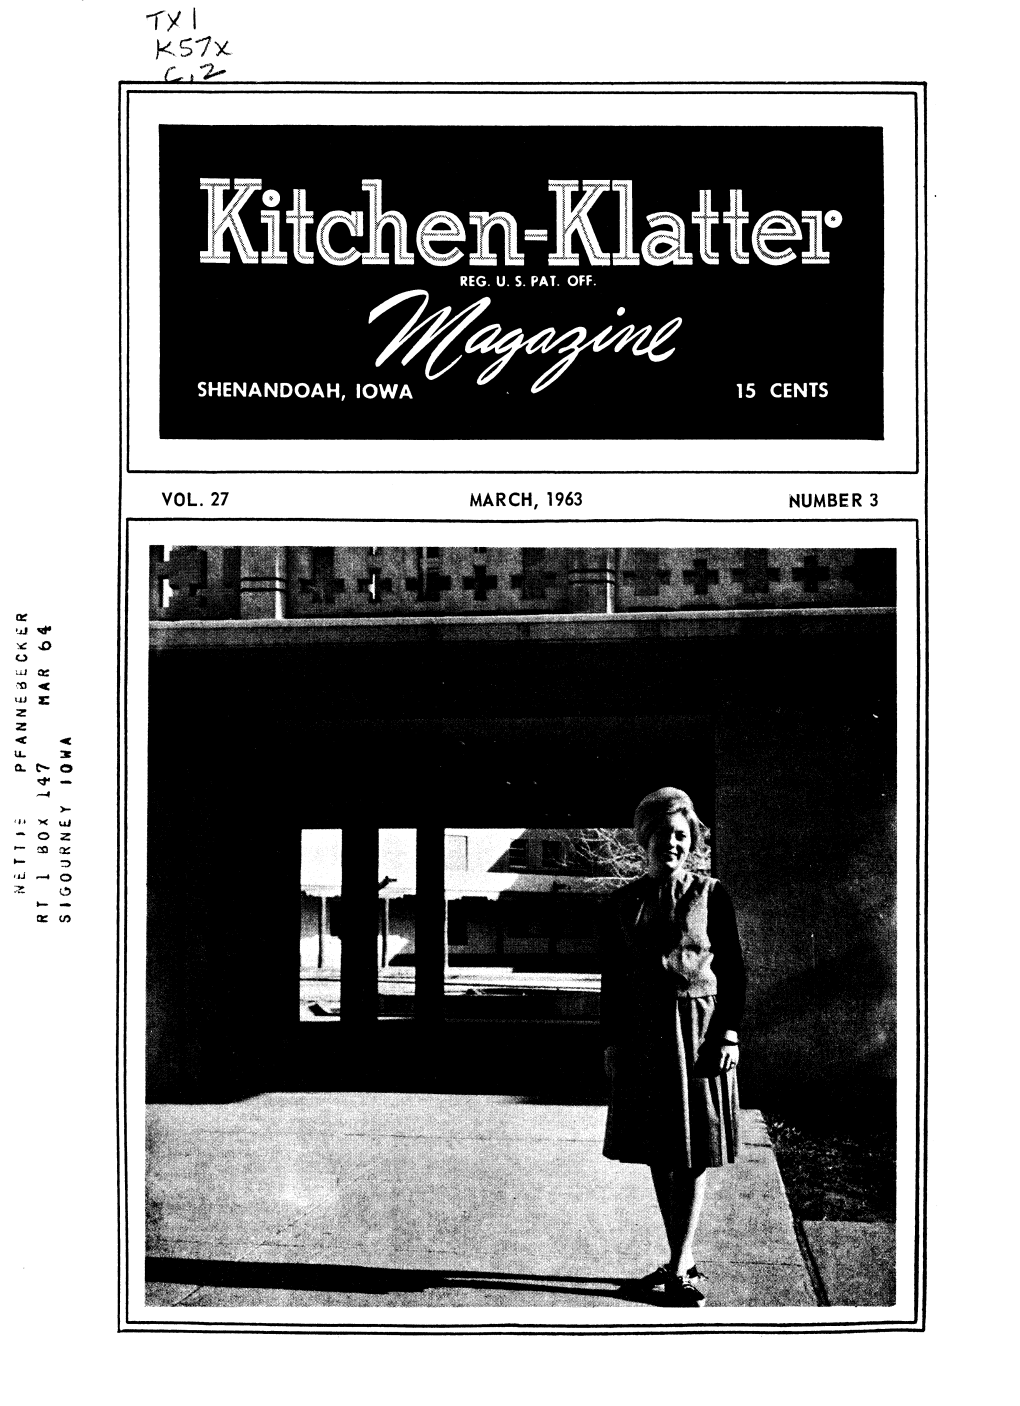 Kitchen-Klatter Magazine, March, 1963